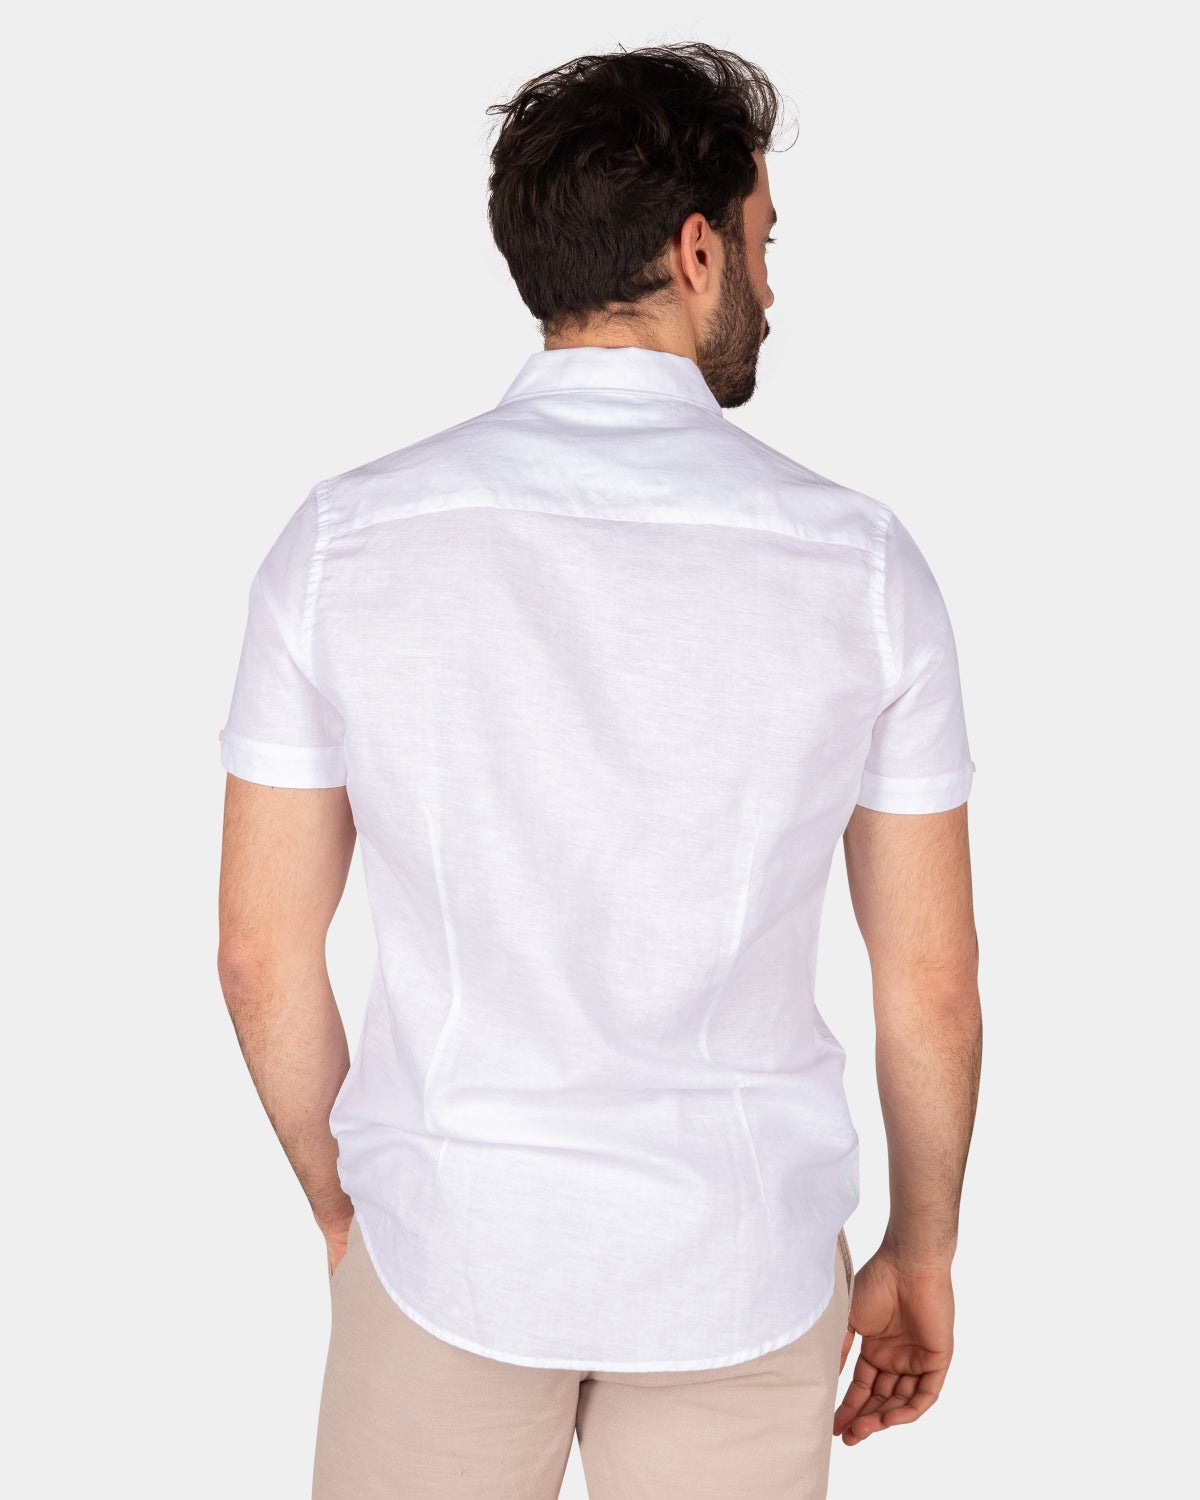 Einfarbiges Hemd mit kurzen Ärmeln - White